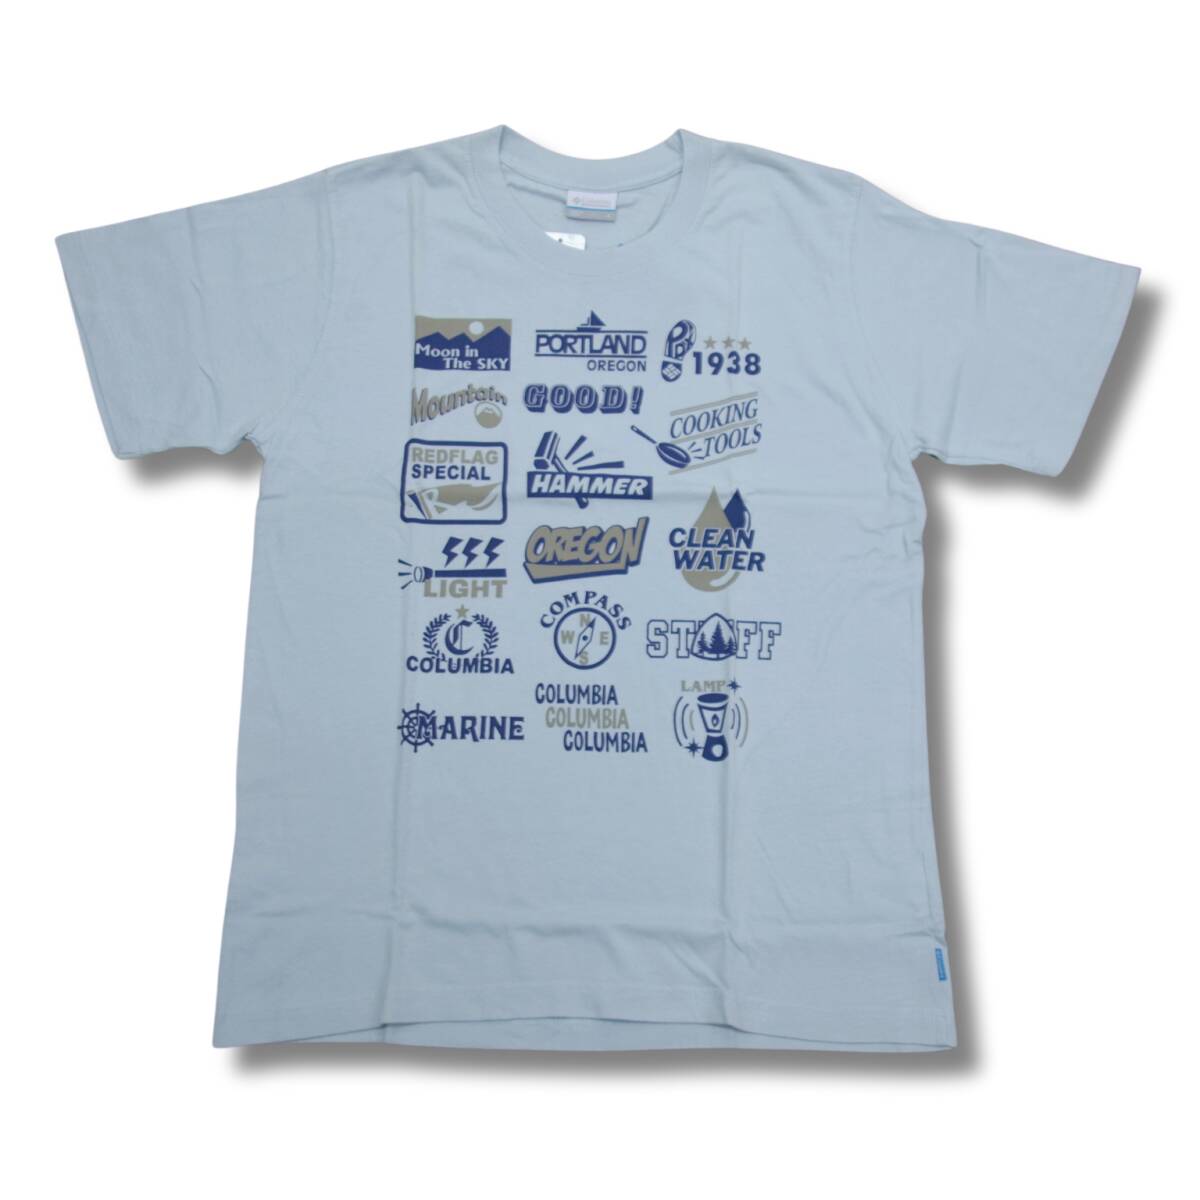 即決☆コロンビア クリスタルTシャツ BLU/Lサイズ 送料無料 ブルー 青 半袖 UVケア UPF15 コットン 普段使用OK